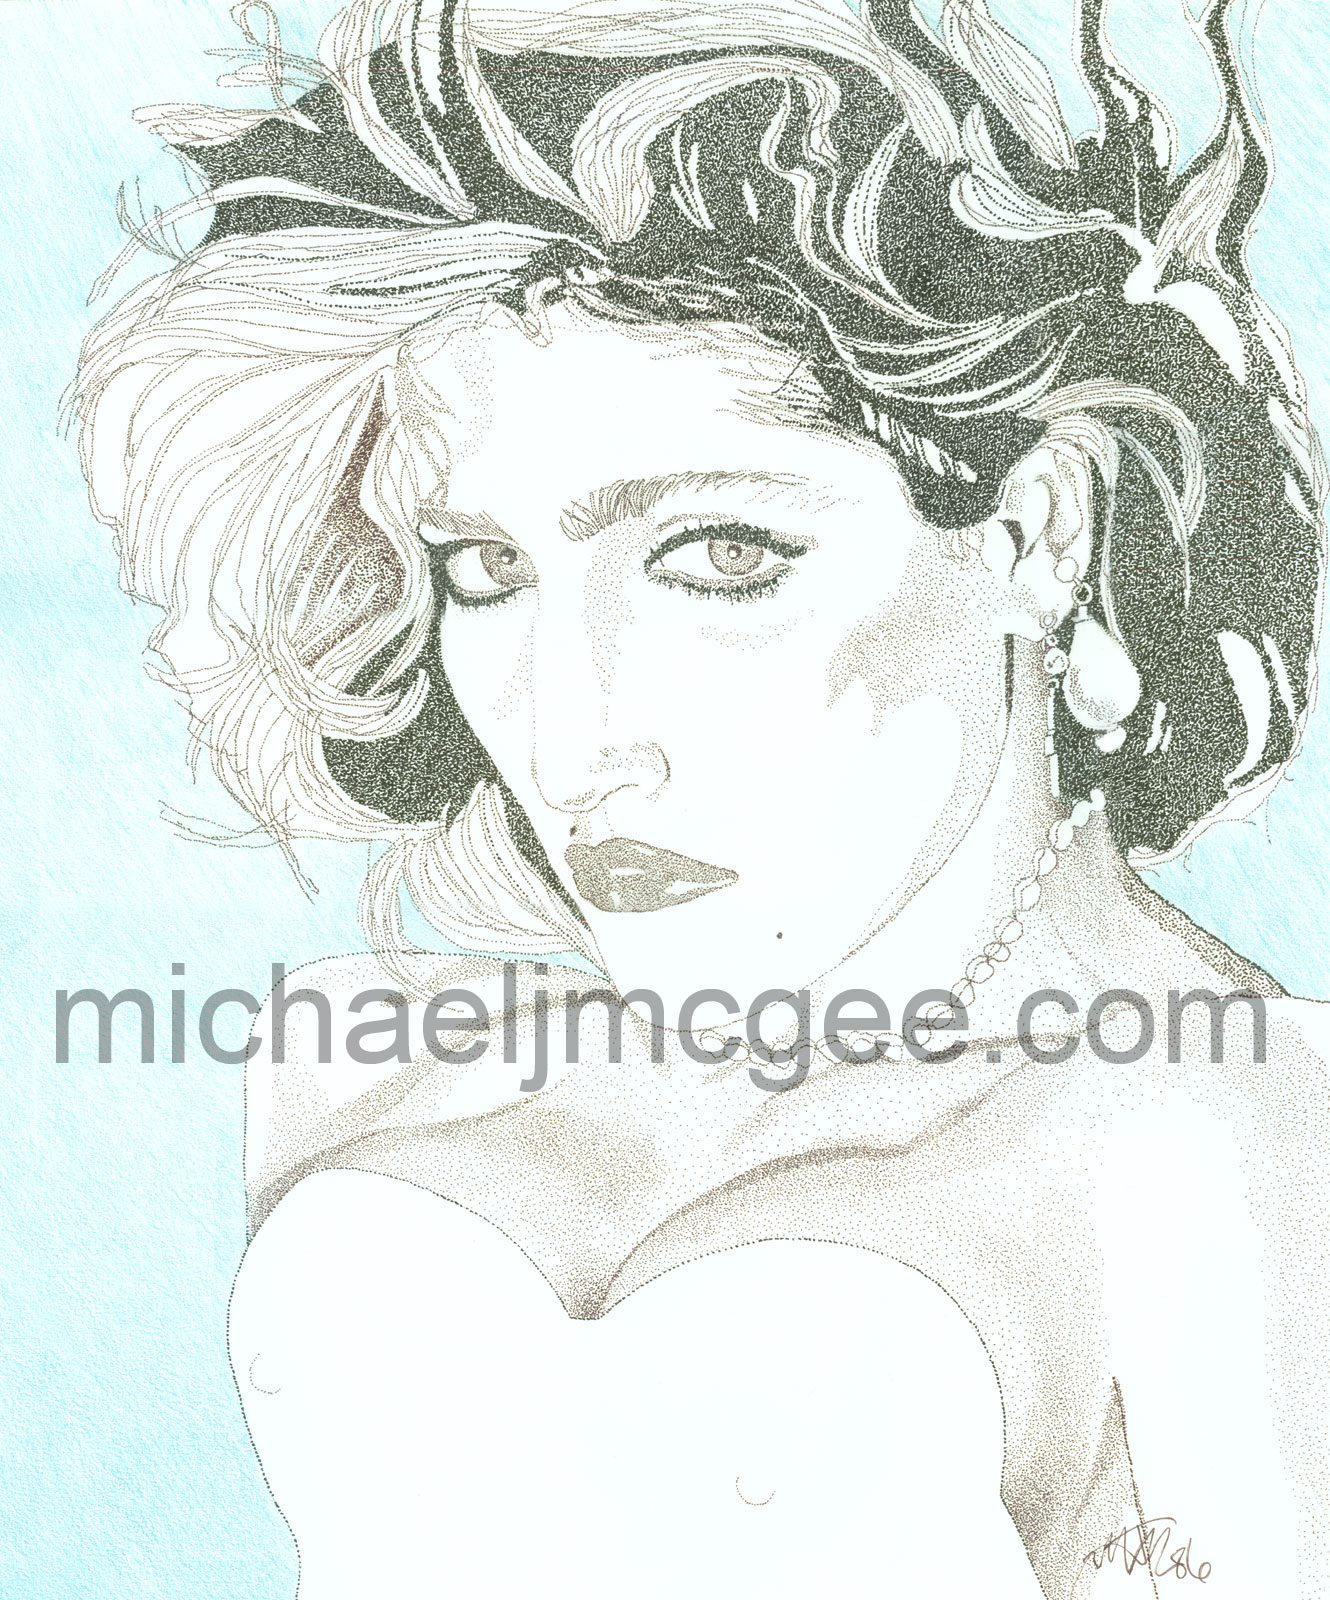 Madonna / MJM Artworks / michaeljmcgee.com